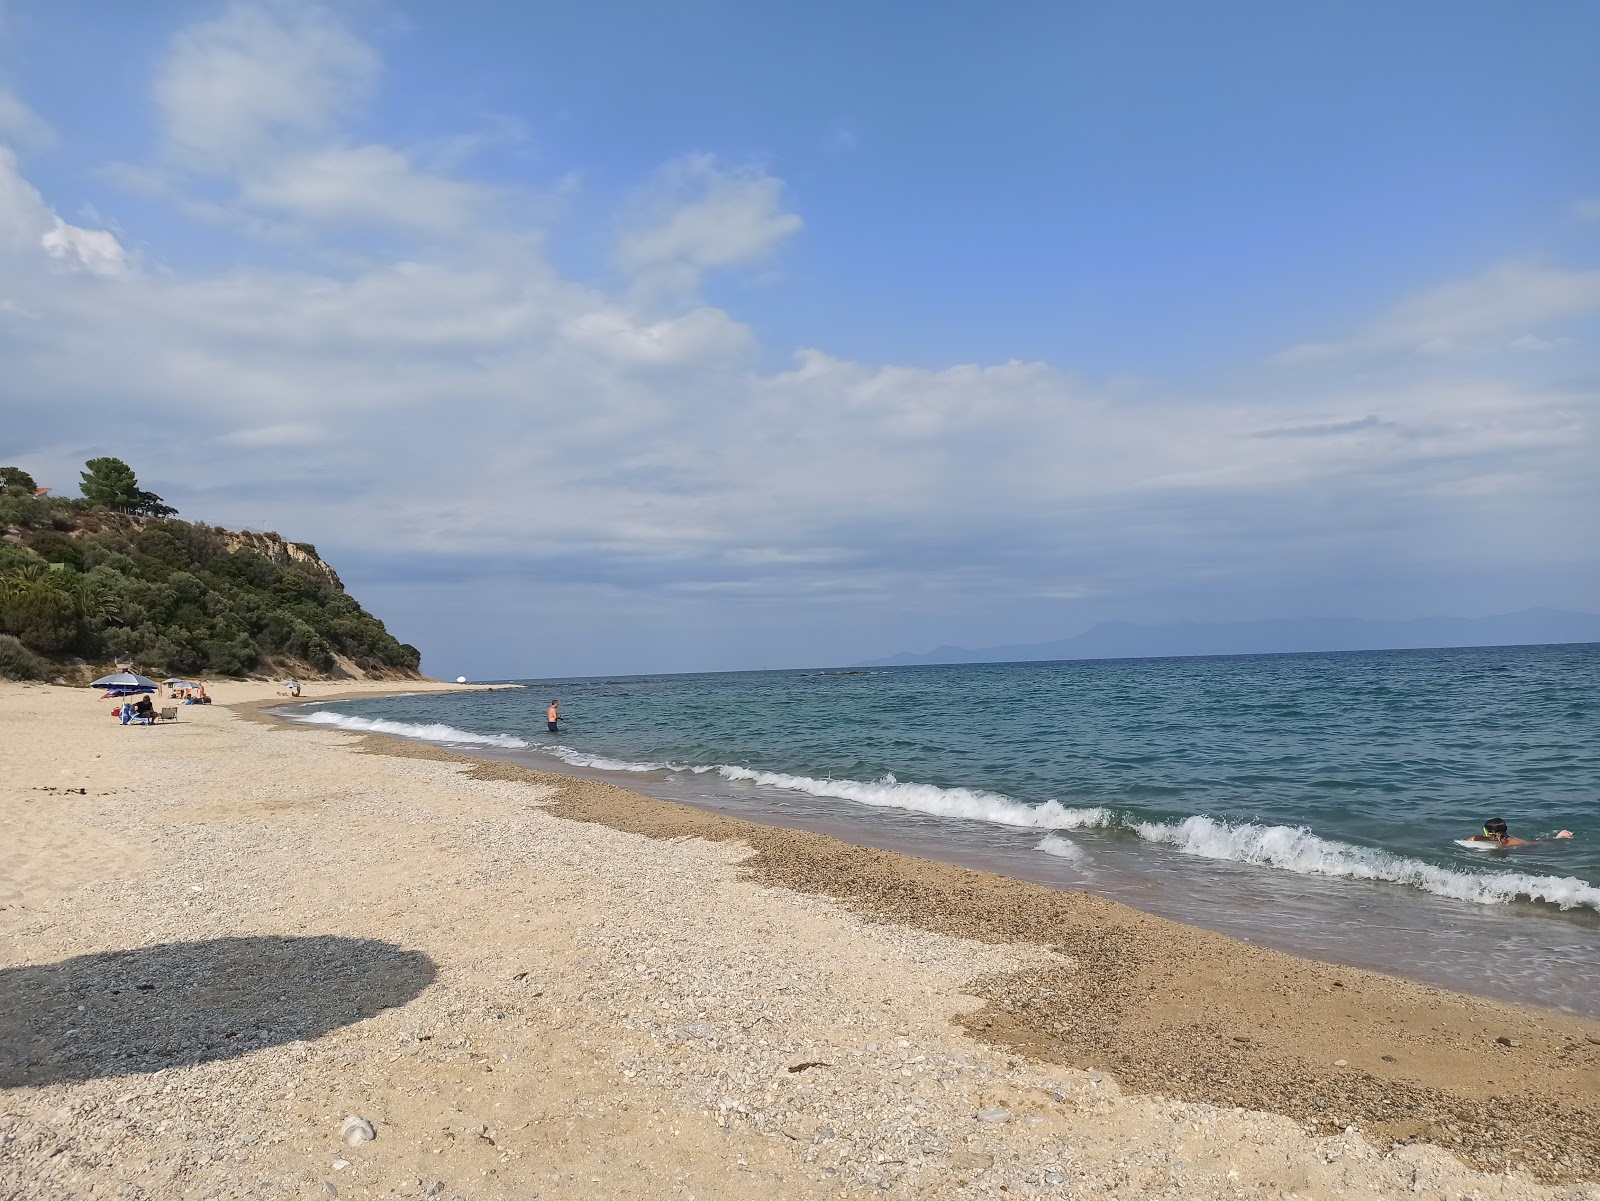 Kavala beach'in fotoğrafı parlak kum yüzey ile